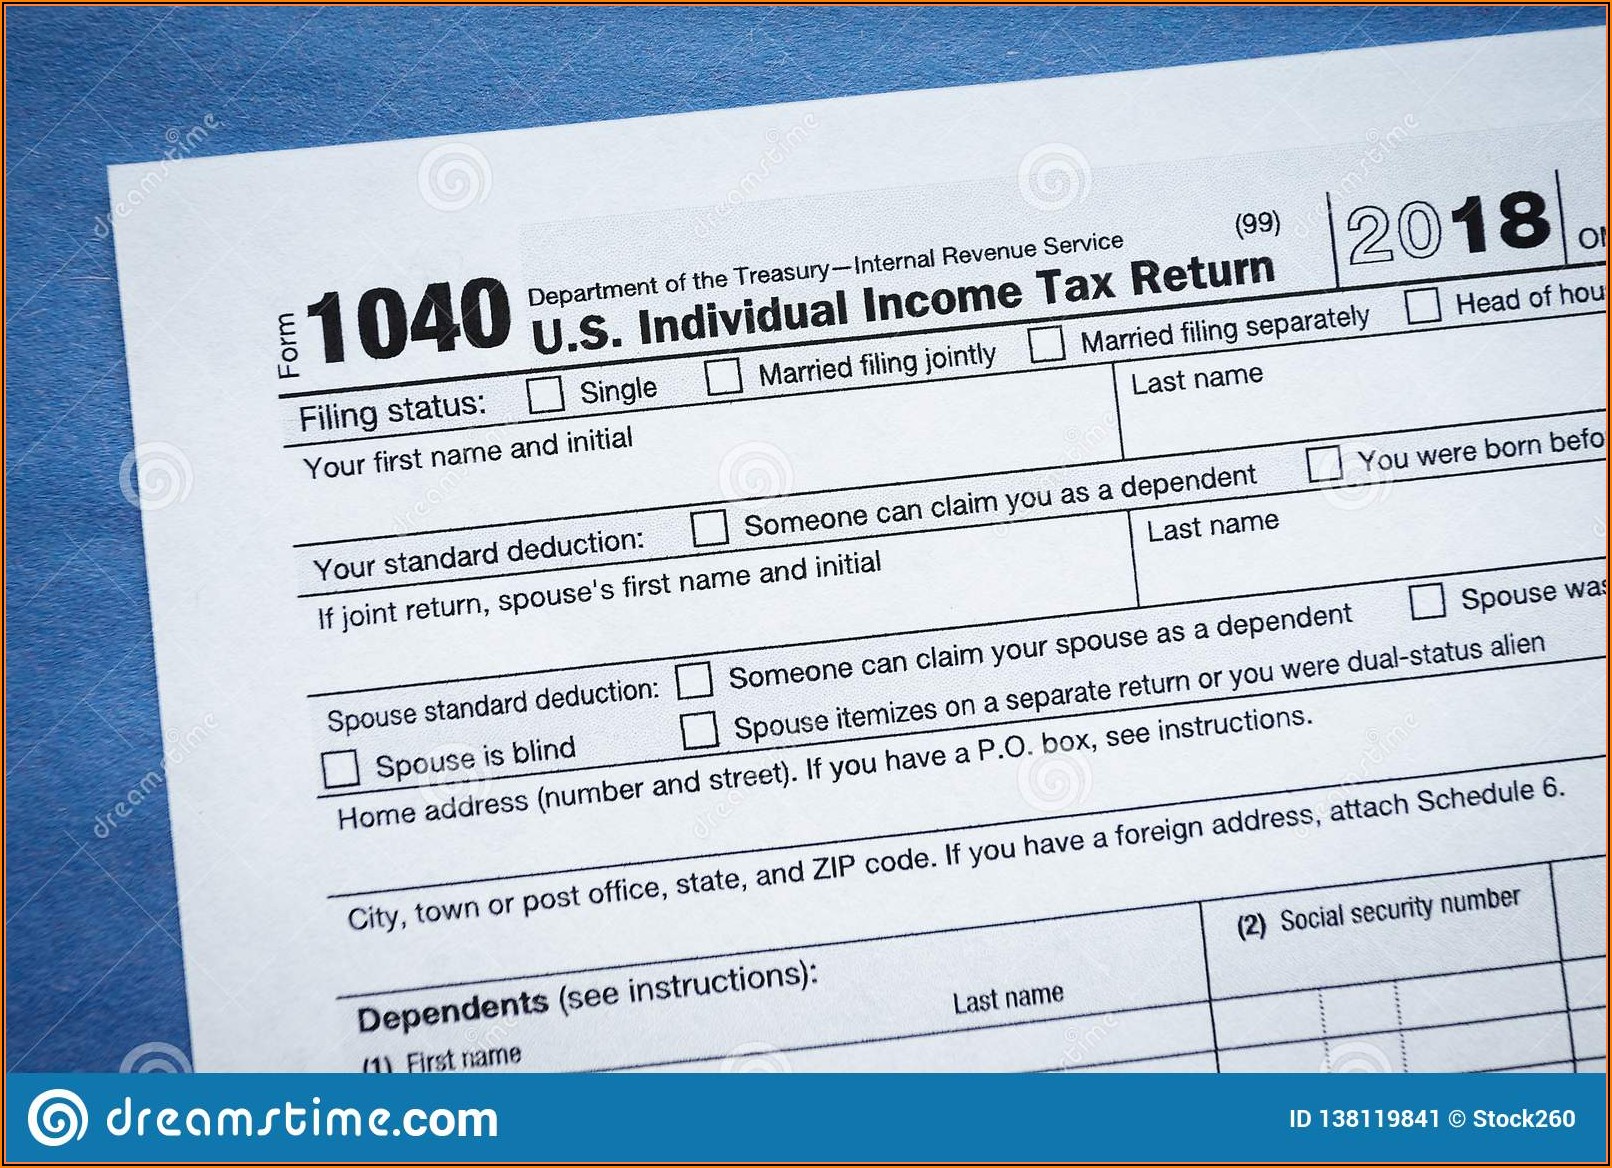 2018 Tax Return Form 1040ez